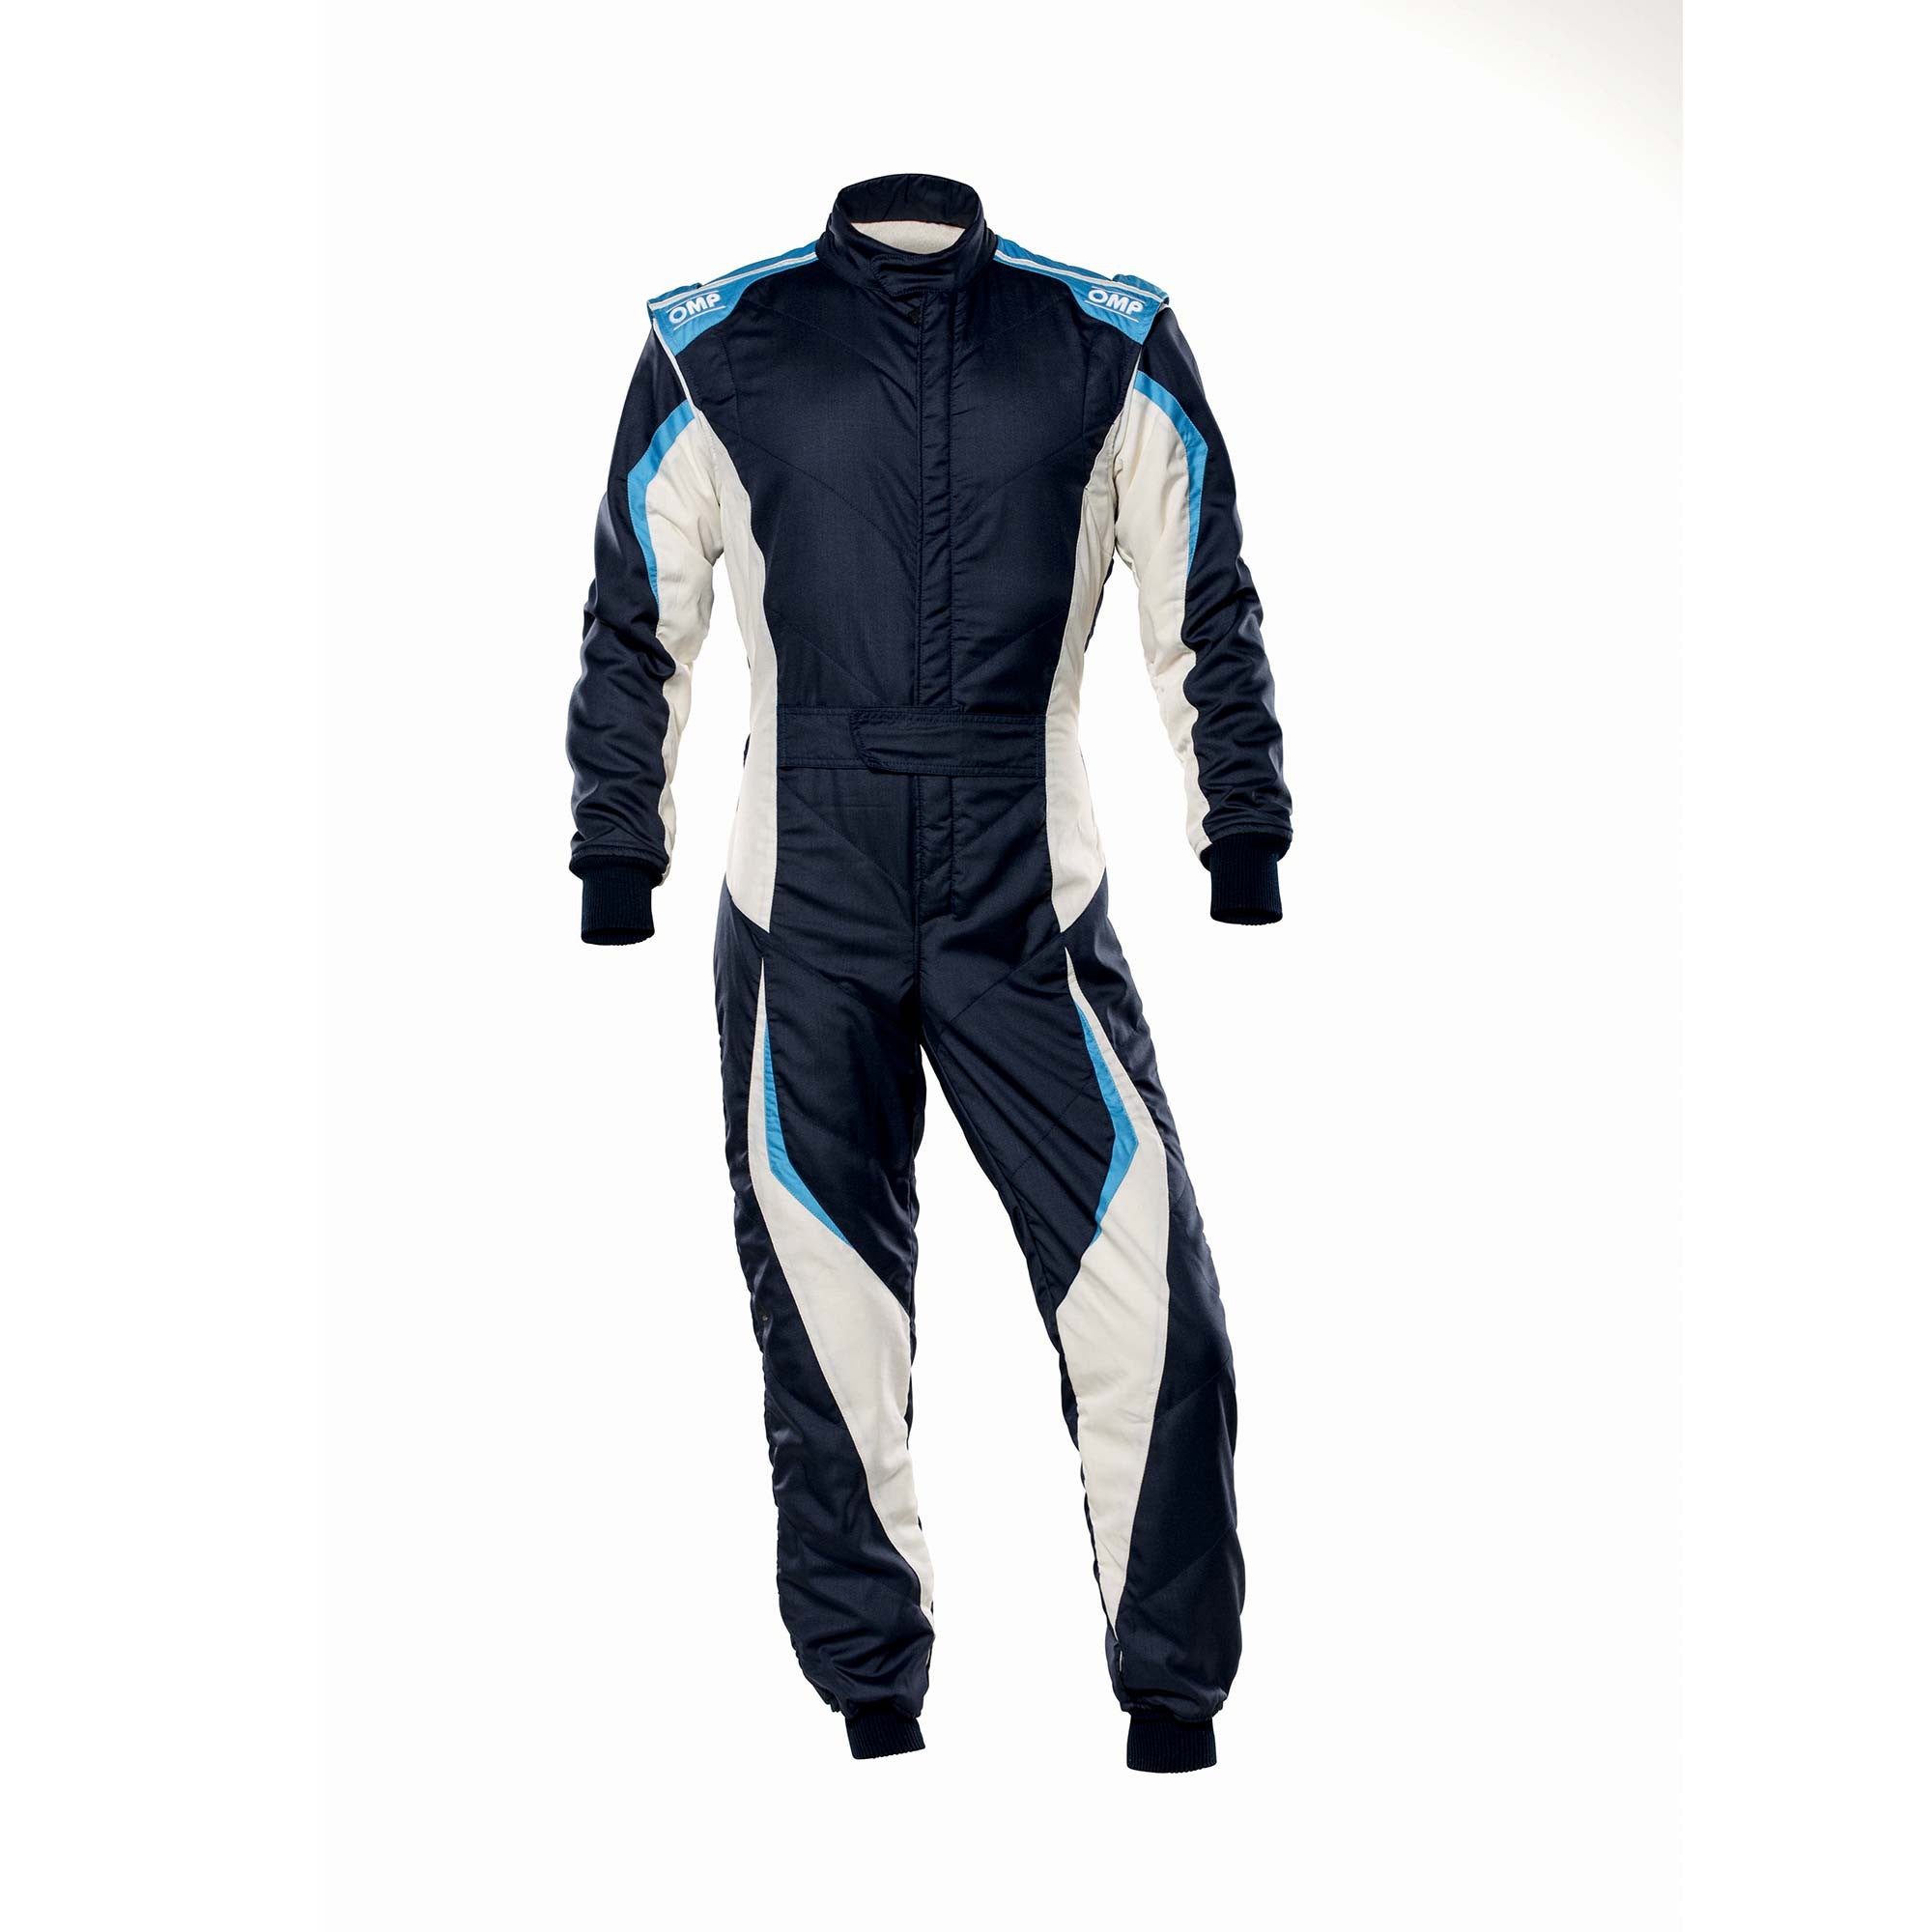 OMP IA0-1859-B01-246-50 Racing suit TECNICA EVO MY2021, FIA 8856-2018, navy blue/white/grey/cyan, size 50 Photo-0 